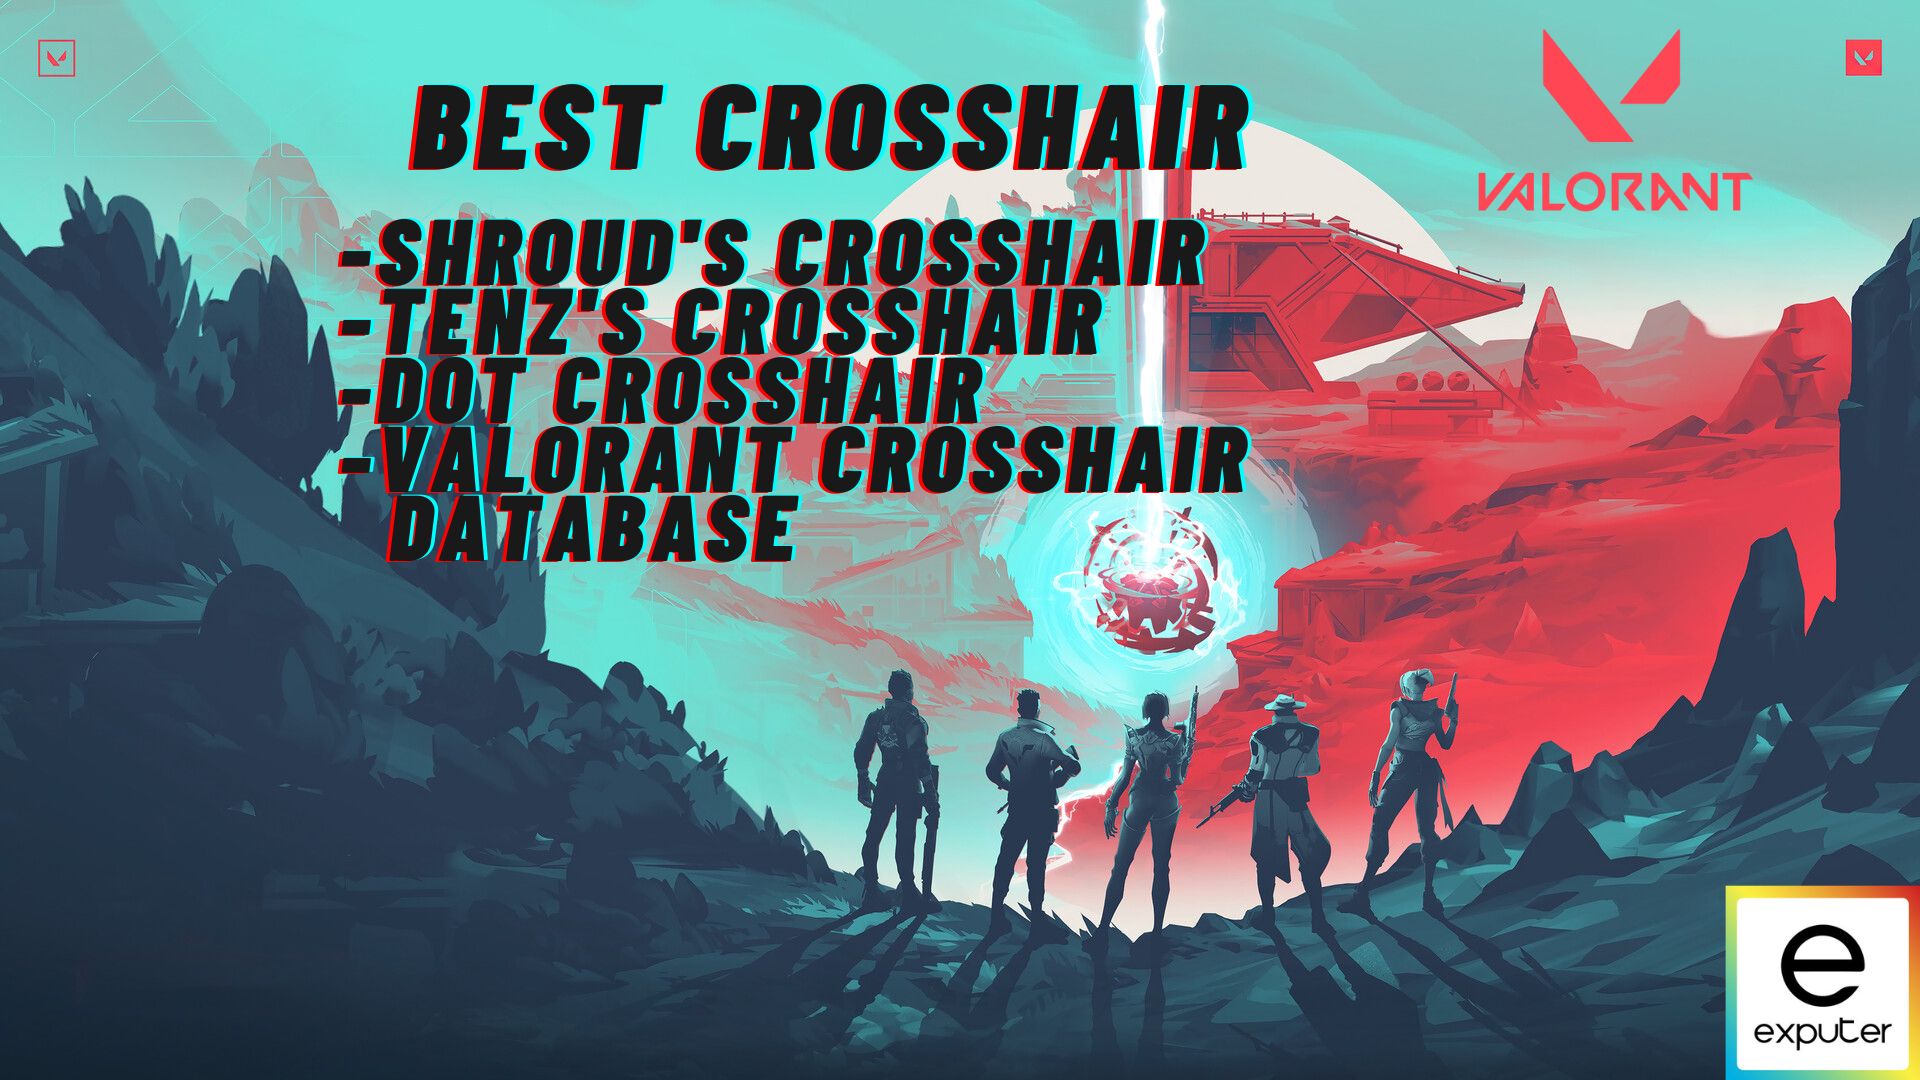 Best Crosshairs found in Valorant.